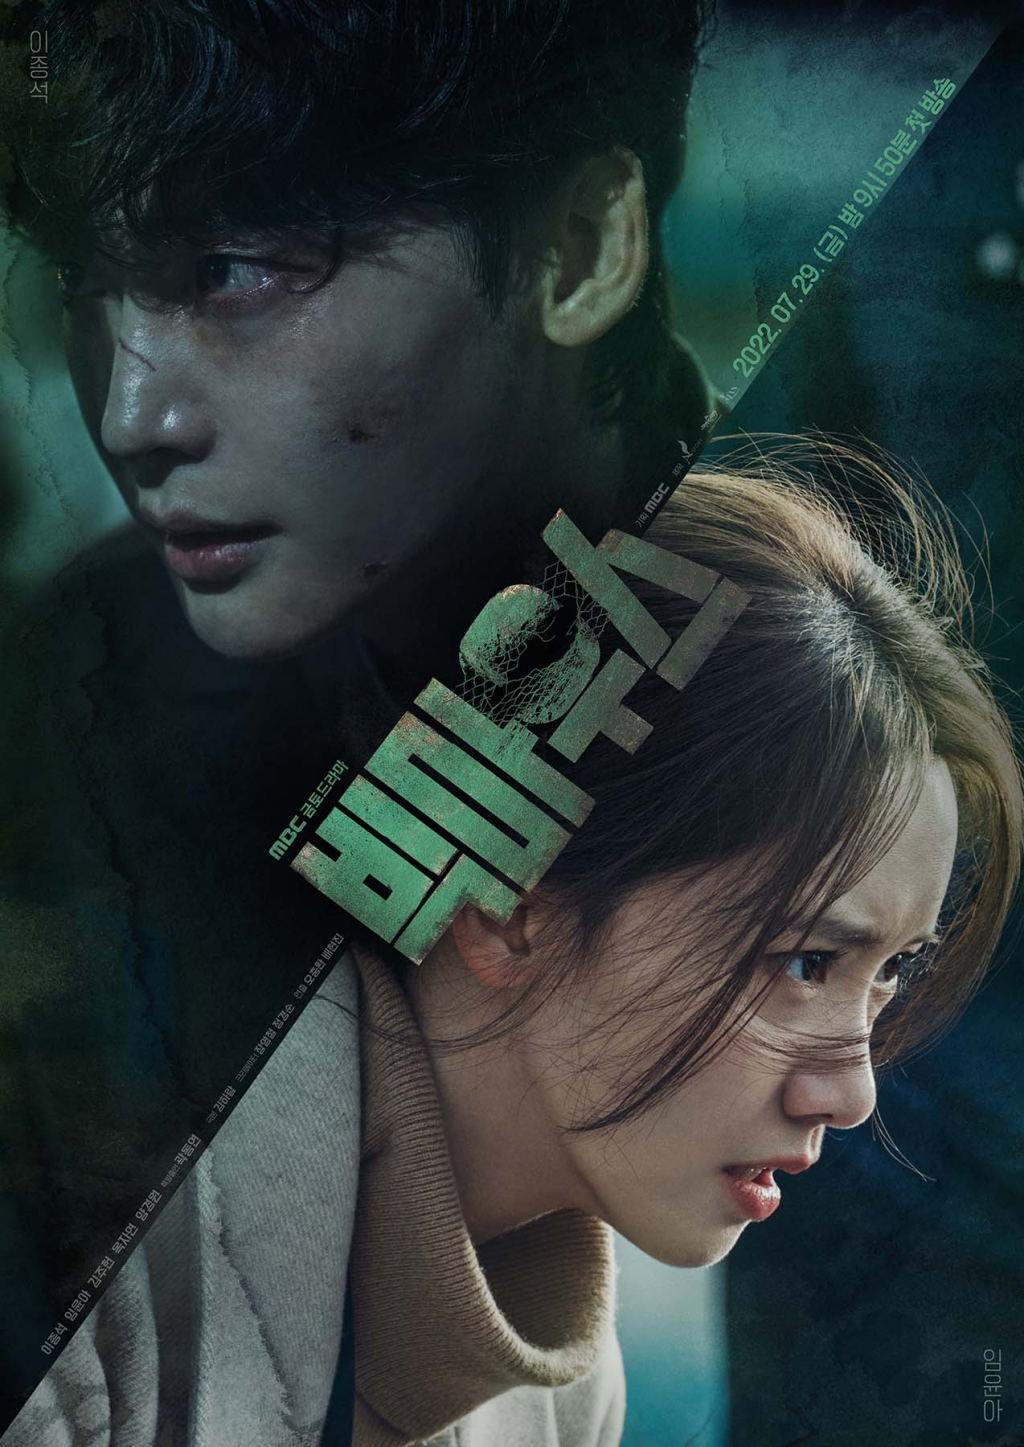 6 phim Hàn có rating mở màn cao nhất trên đài trung ương: ‘Big Mouth’ vừa lên sóng đã góp mặt